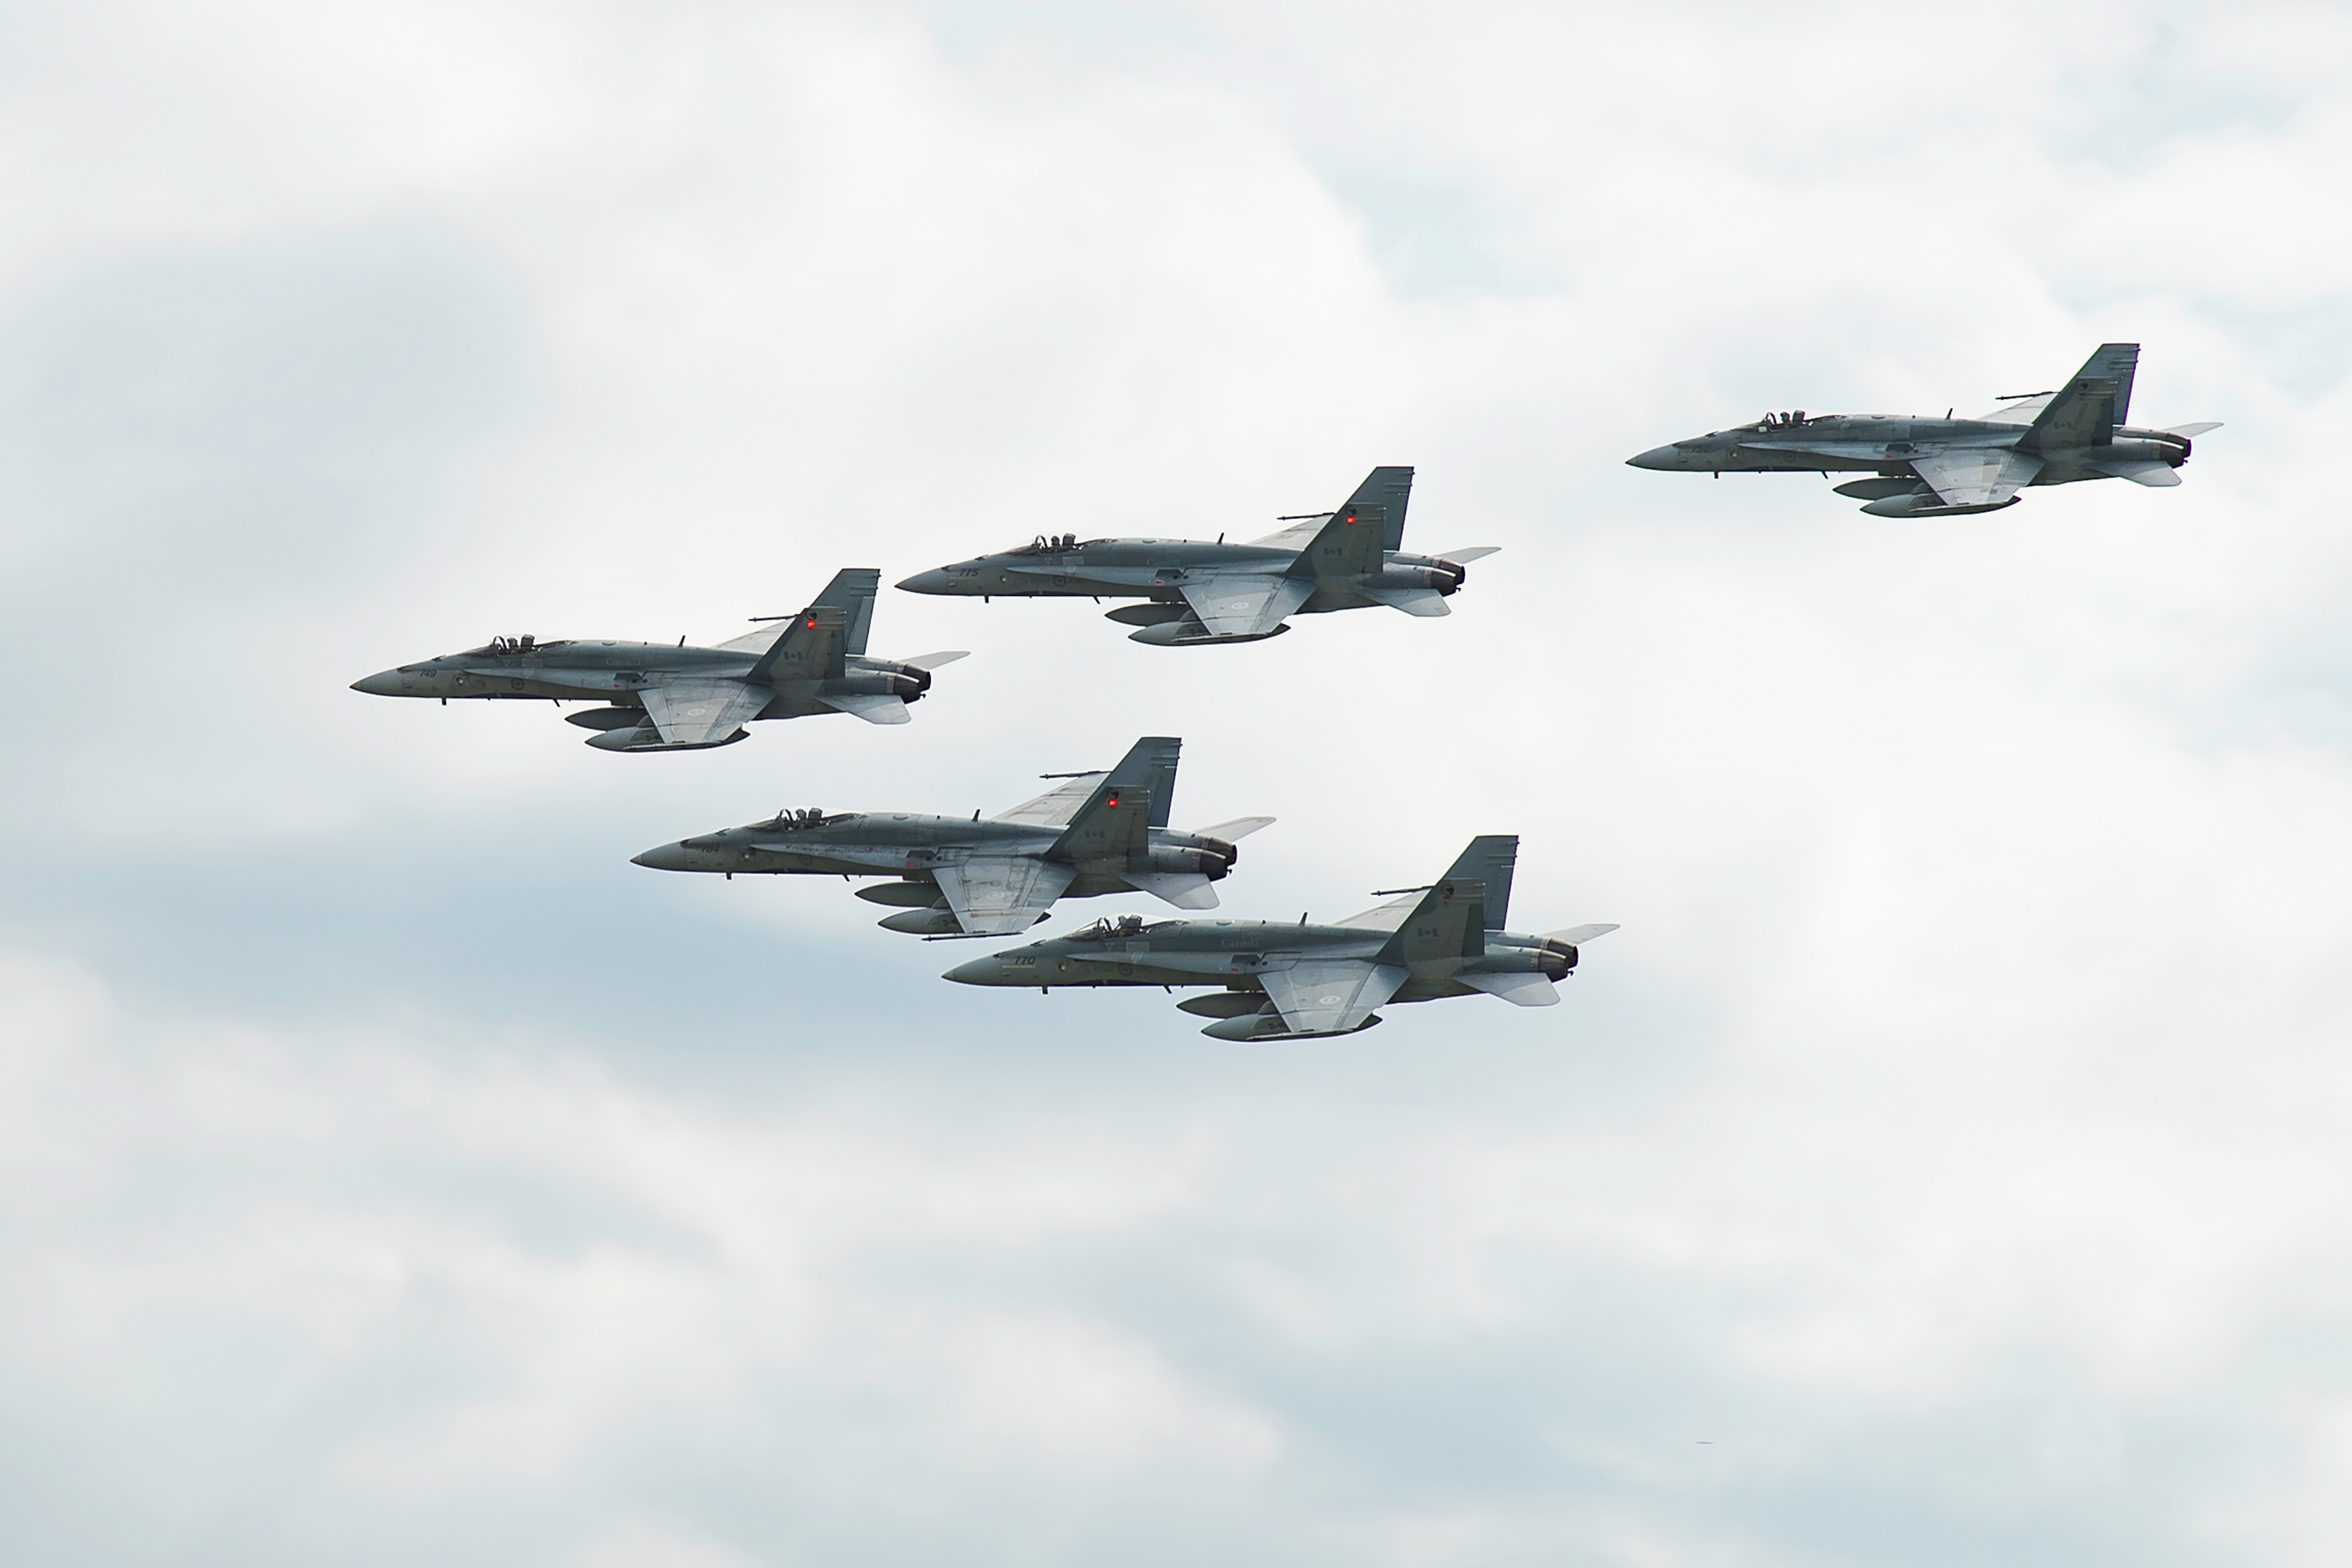 Le 16 août 2017. Des chasseurs CF-188 Hornet de l’Aviation royale canadienne effectuent un défilé aérien lors de leur départ de la 4e Escadre Cold Lake, en Alberta, le 16 août 2017, en vue de se rendre au Roumanie, dans le cadre de l’opération REASSURANCE. (Photo : Cpl Justin Roy, Services d’imagerie de la 4e Escadre)